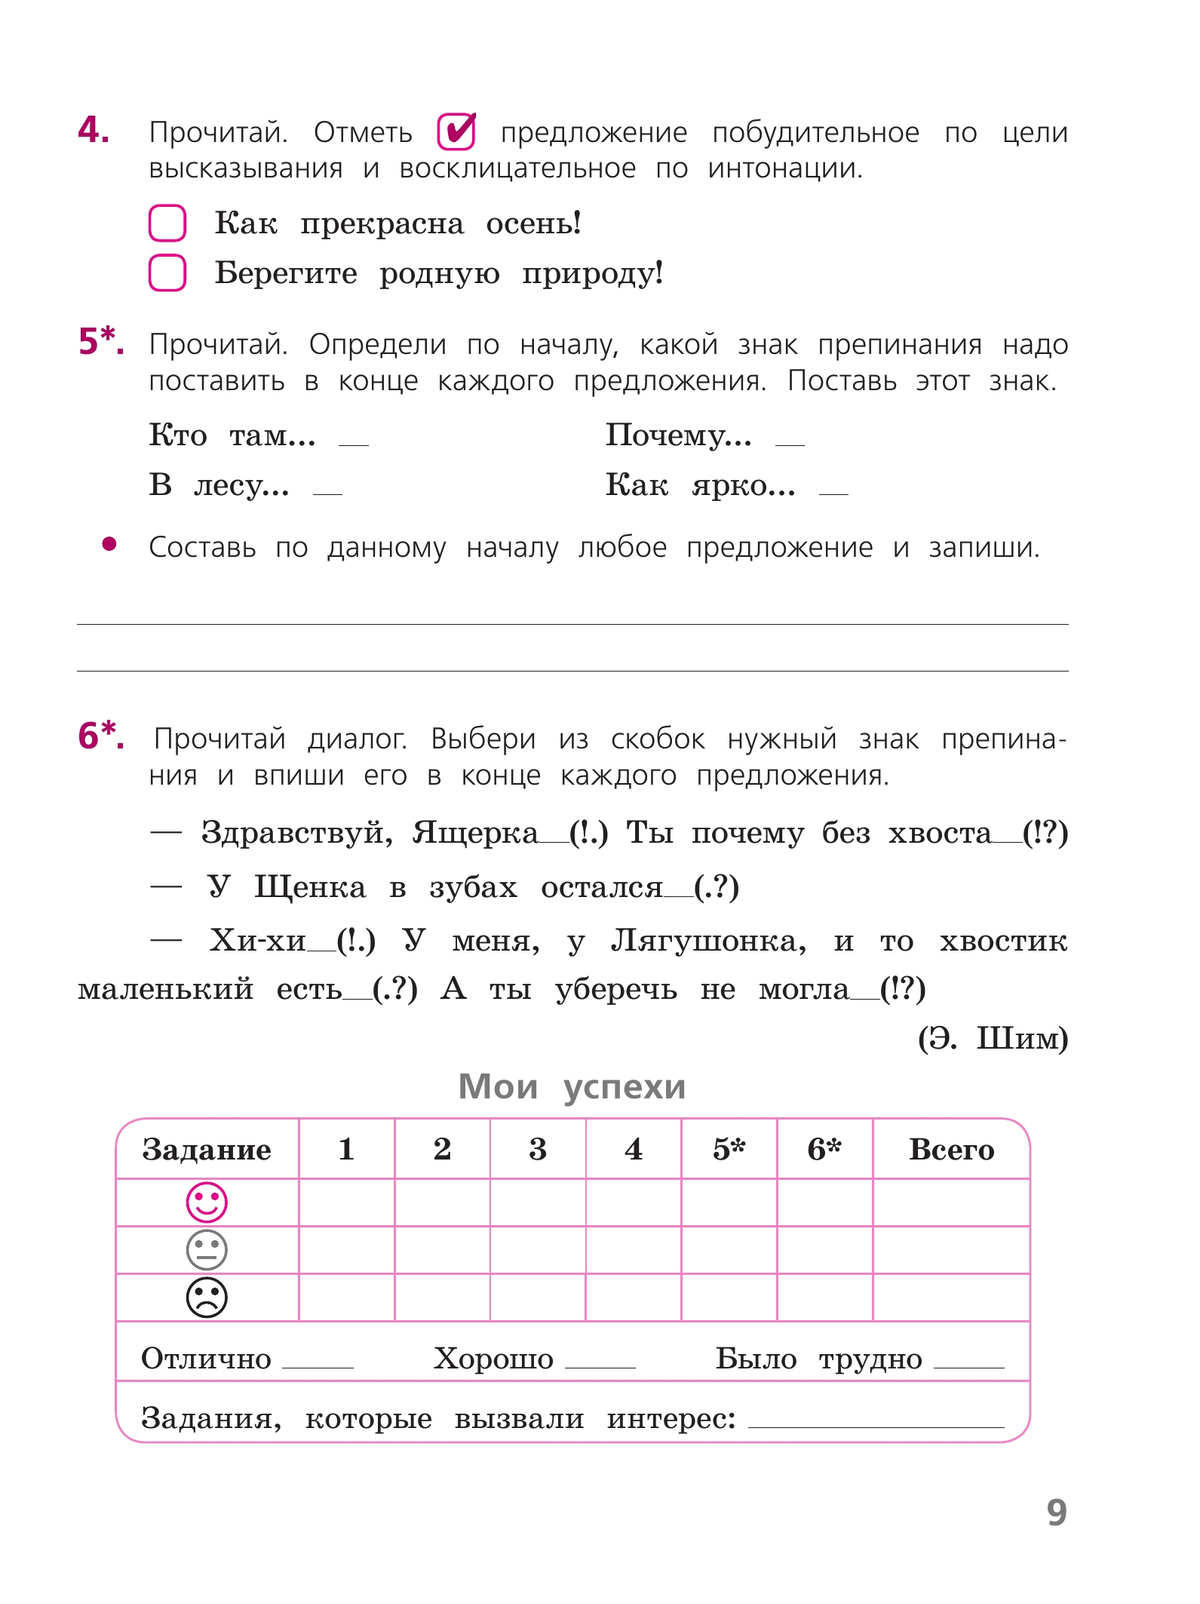 Русский язык. Тетрадь учебных достижений. 3 класс 3